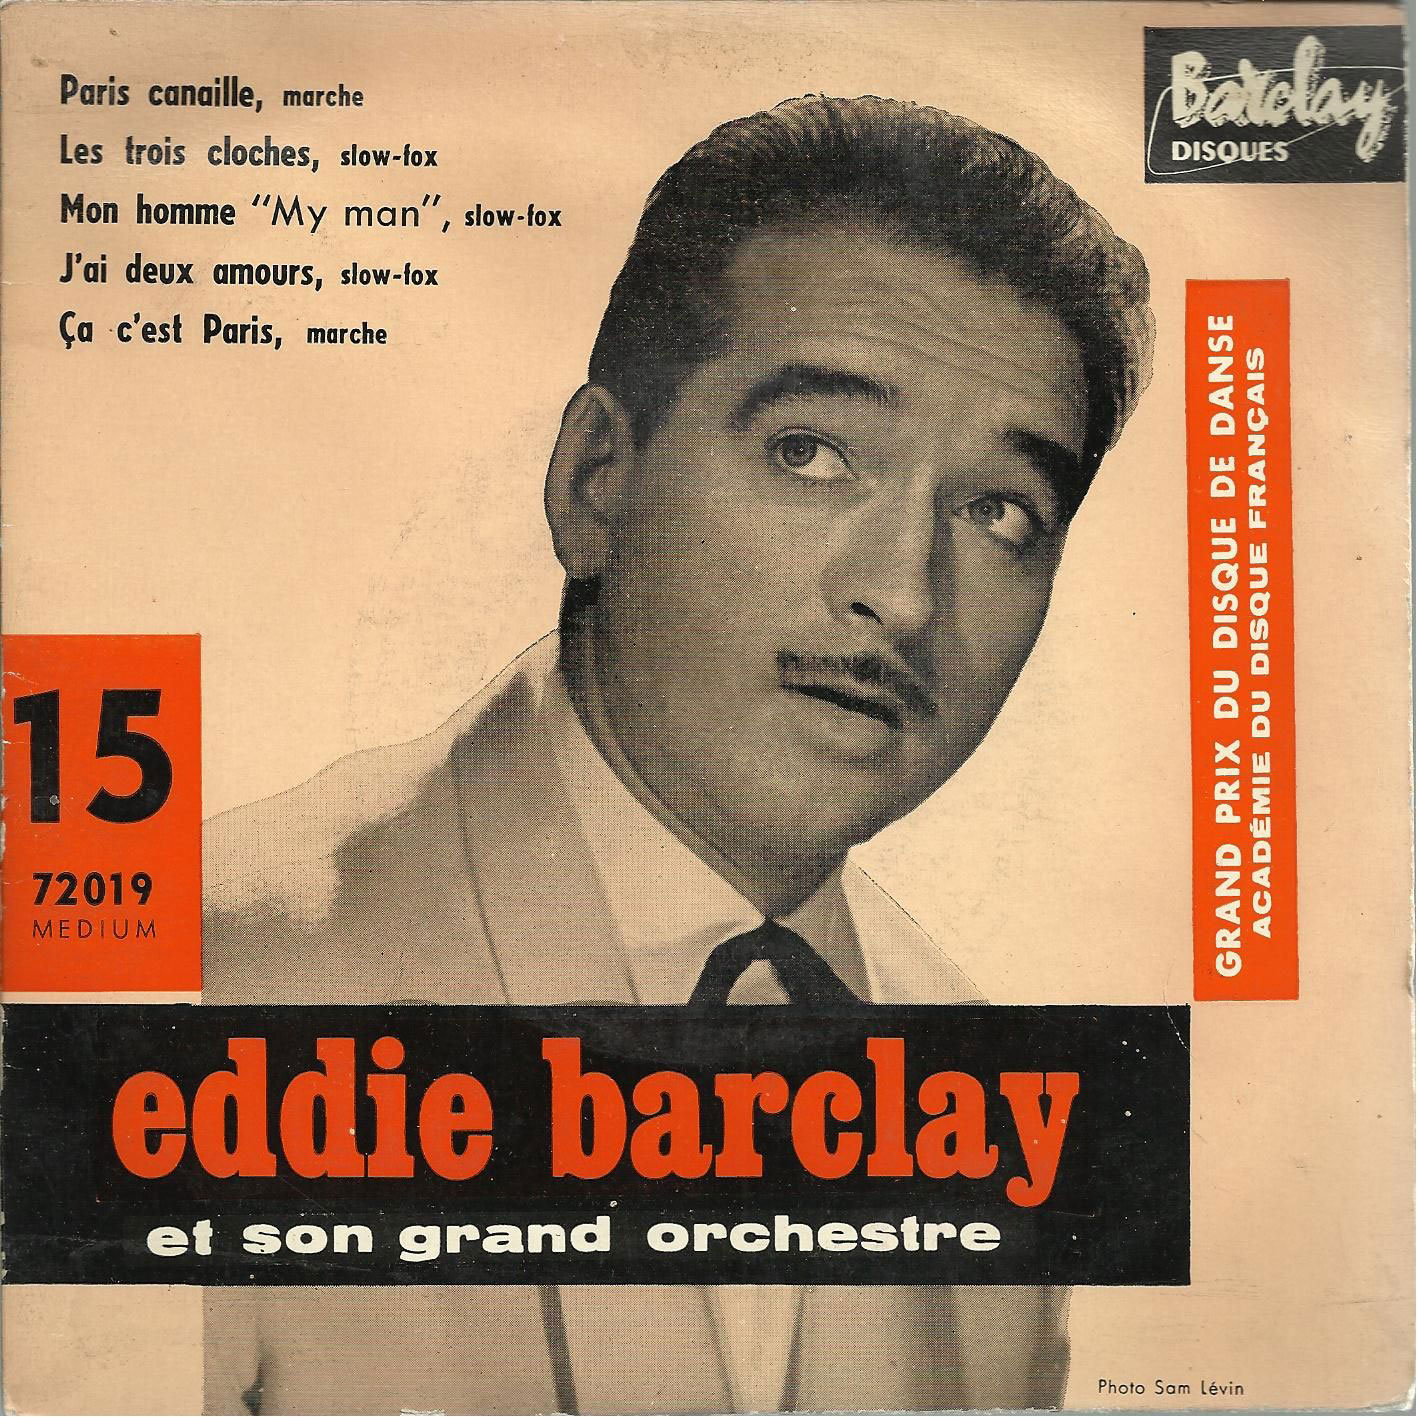 Disque Barclay 72019 Eddie Barclay et son grand orchestre jouent Paris Canaille